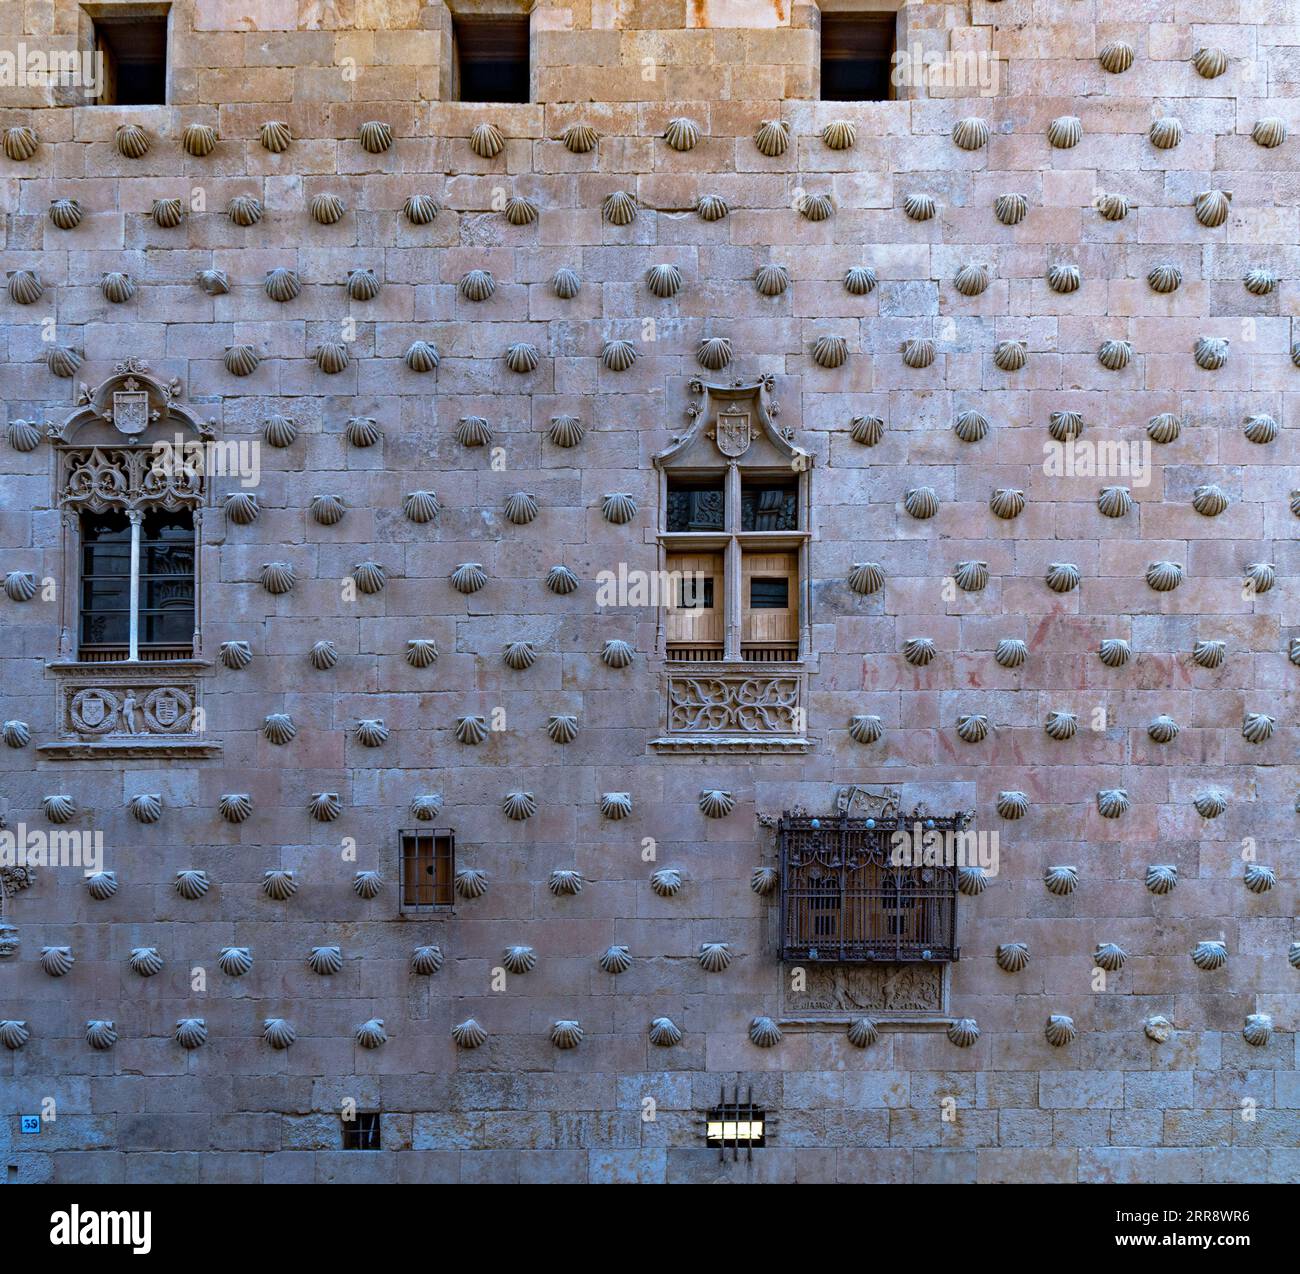 Fassade von La Casa de las Conchas mit schmiedeeisernen Fenstern, Zierleisten mit religiösen Motiven in Basreliefs und Felsenmuscheln in Salamanca in Spanien. Stockfoto